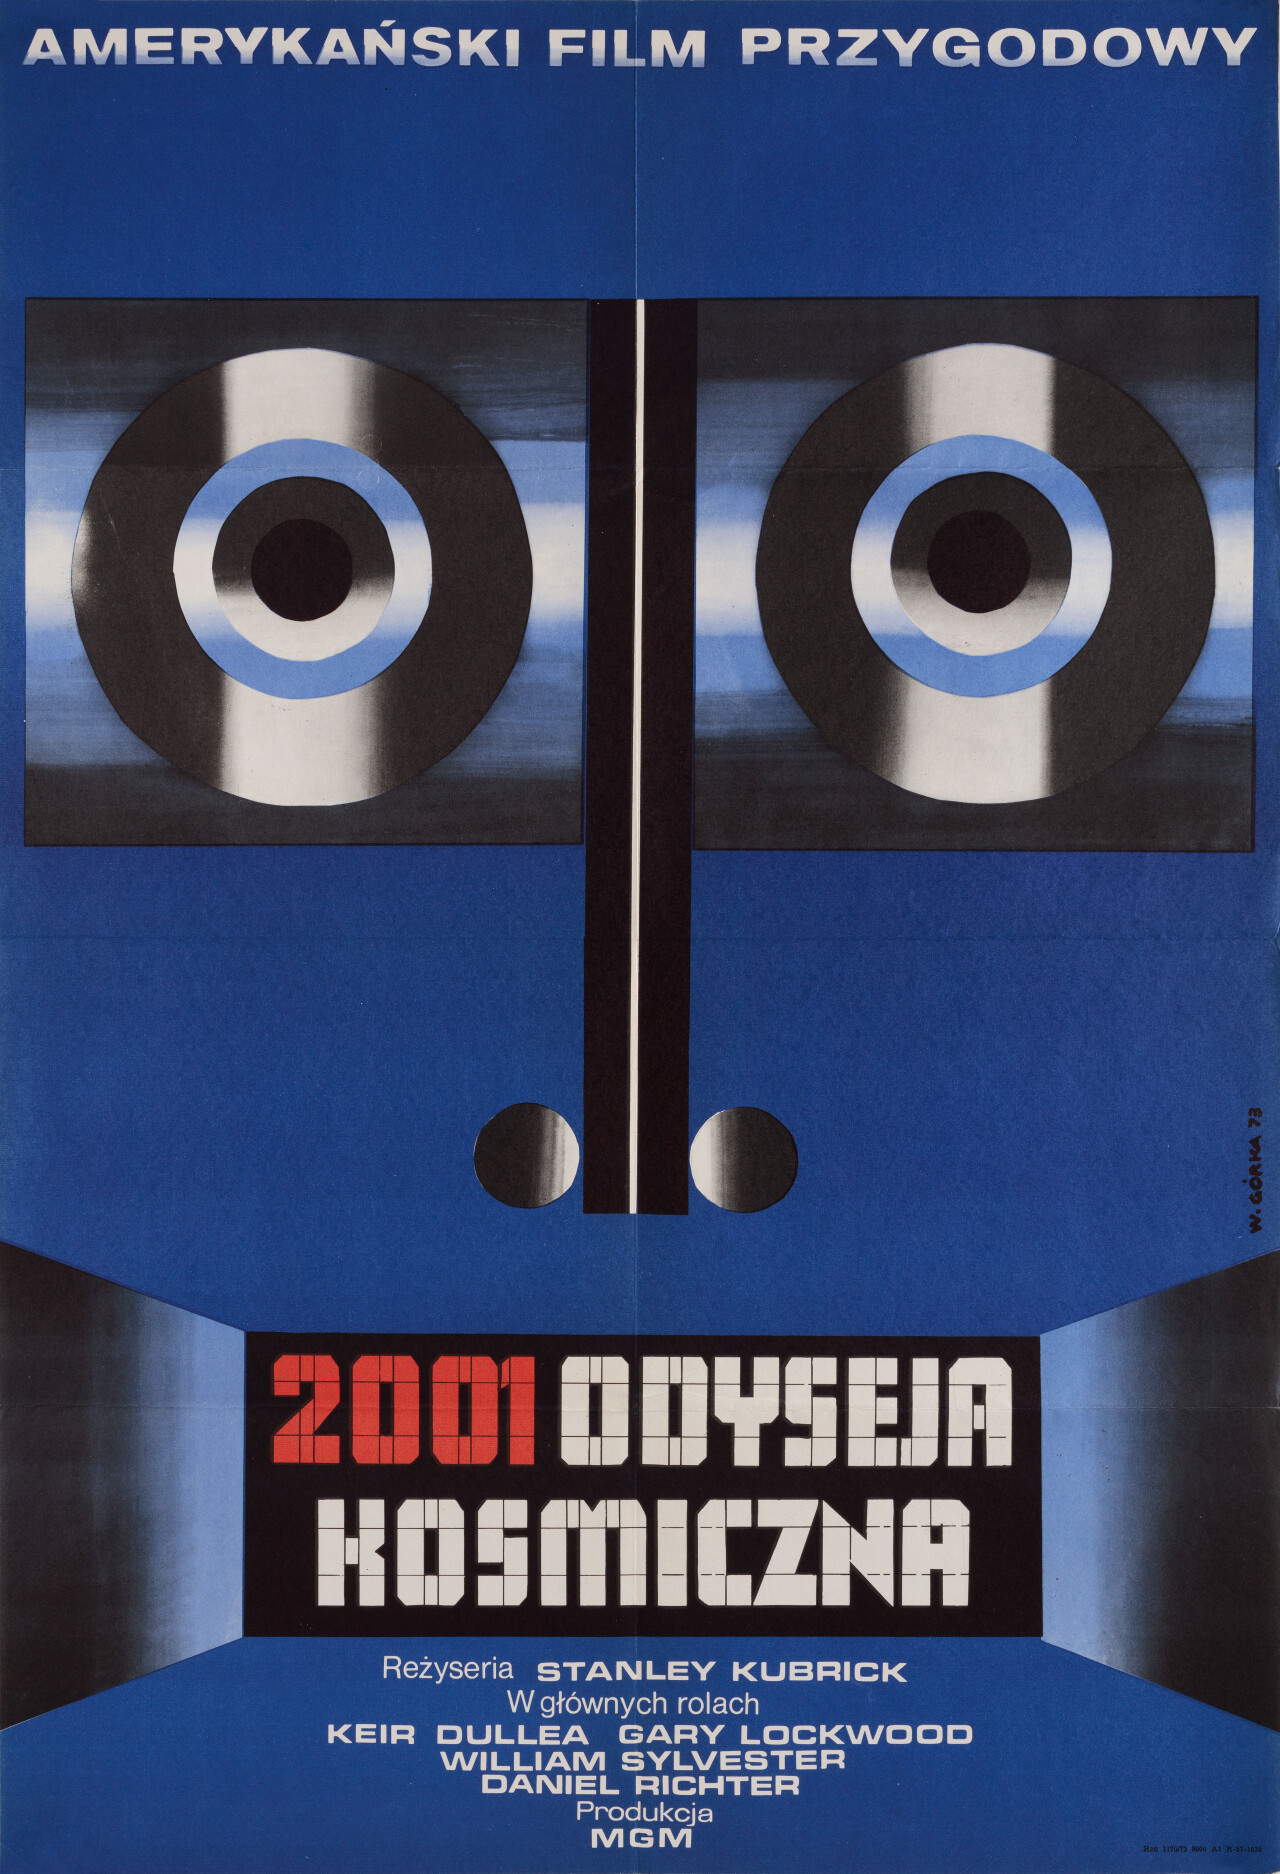 2001 год: Космическая одиссея, (2001: A Space Odyssey 1968), режиссёр Стэнли Кубрик, польский постер к фильму, автор Виктор Горка (графический дизайн, 1973 год)